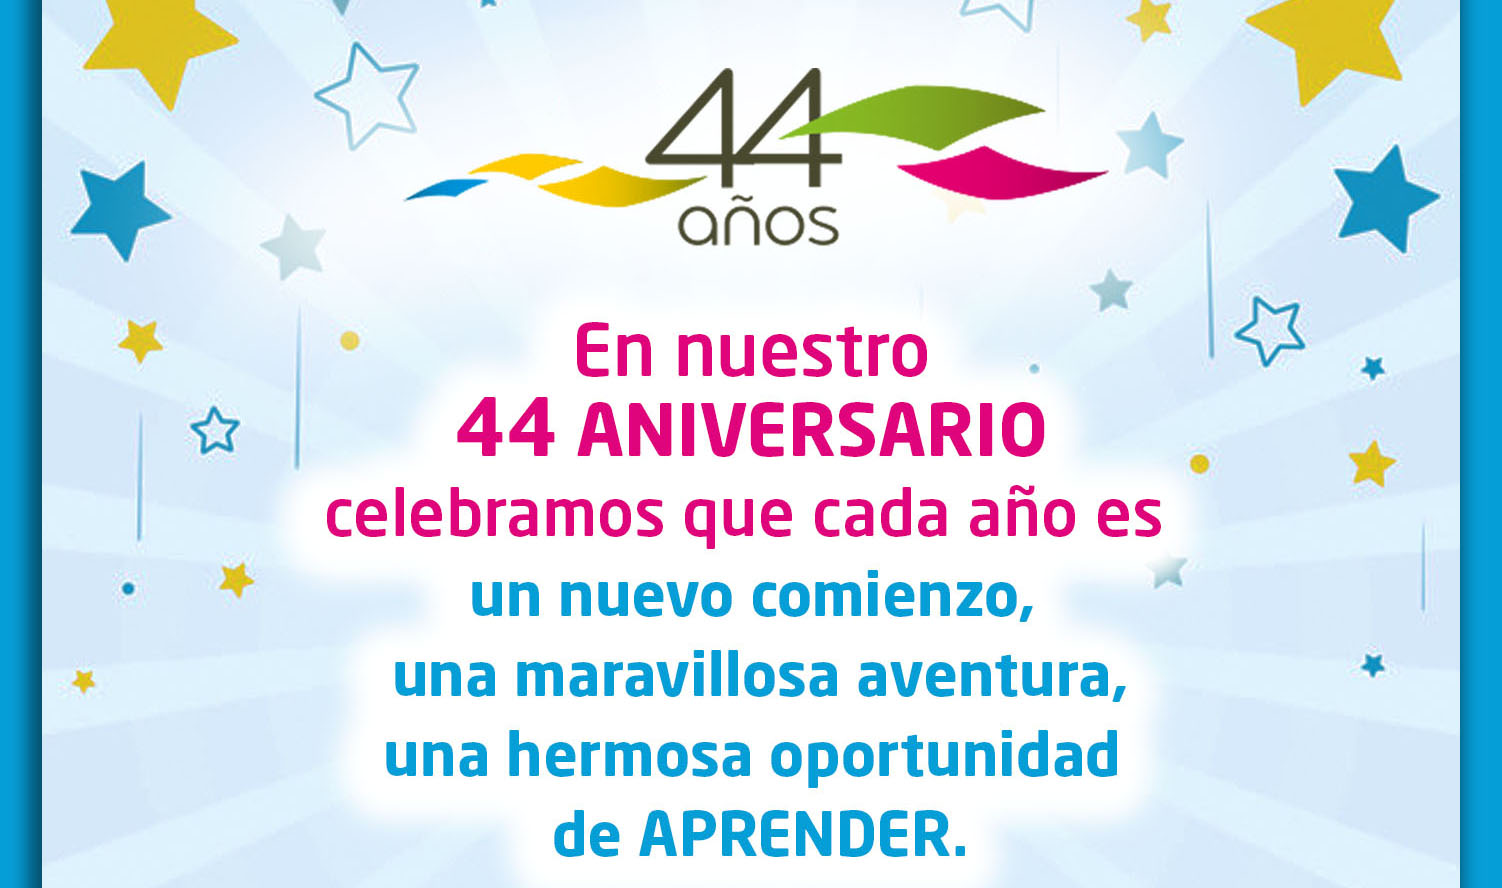 44 Aniversario de SANTILLANA en Venezuela